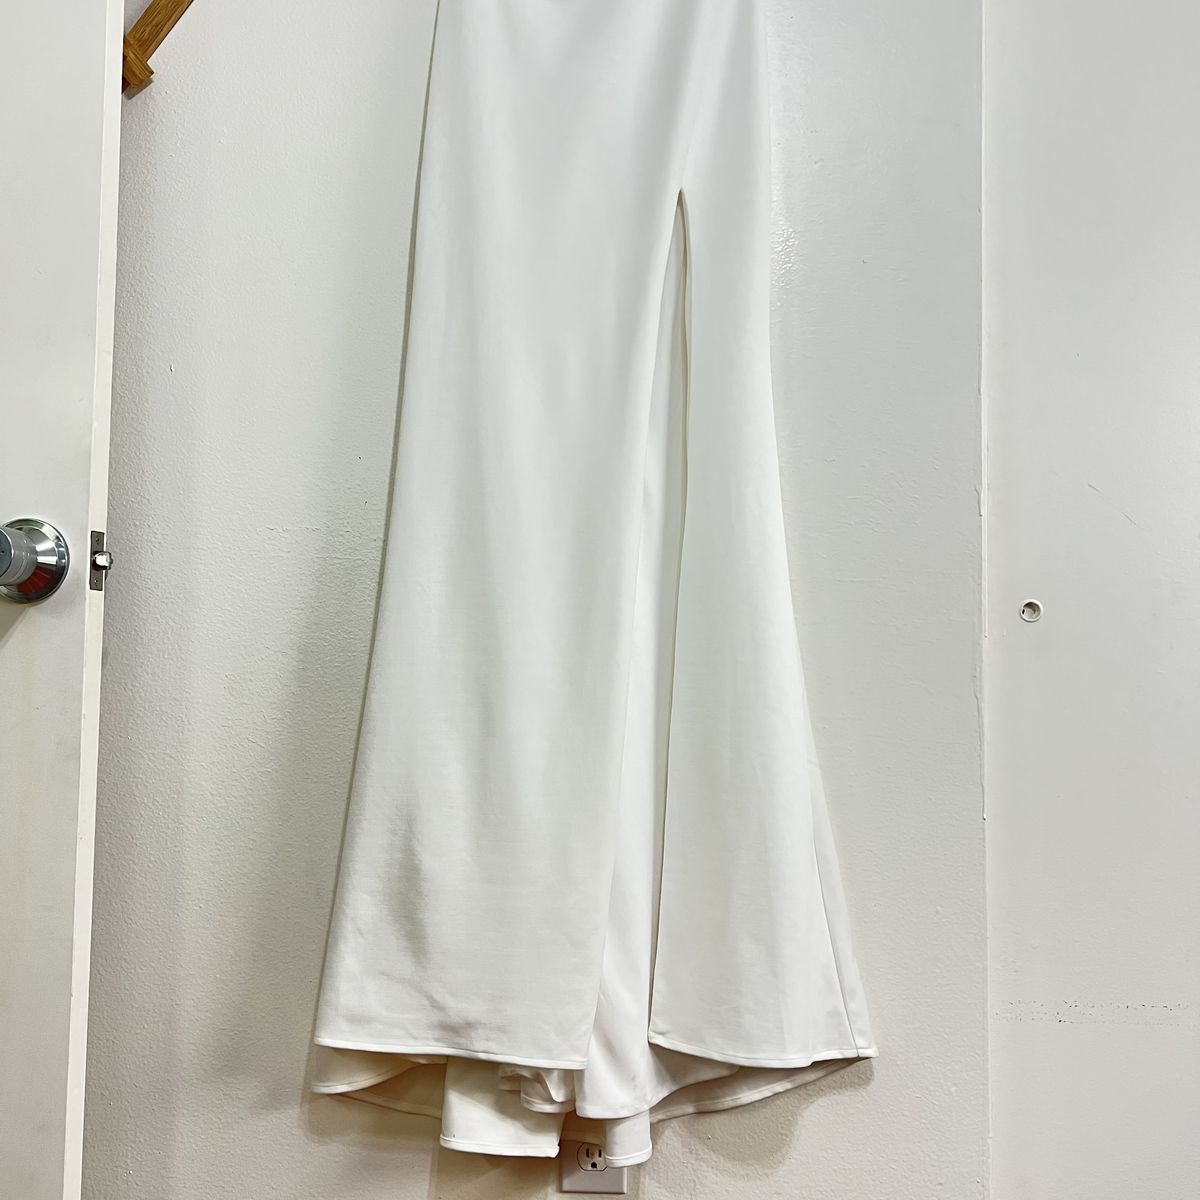 Style 28176 La Femme Size 0 One Shoulder White Side Slit Dress on Queenly